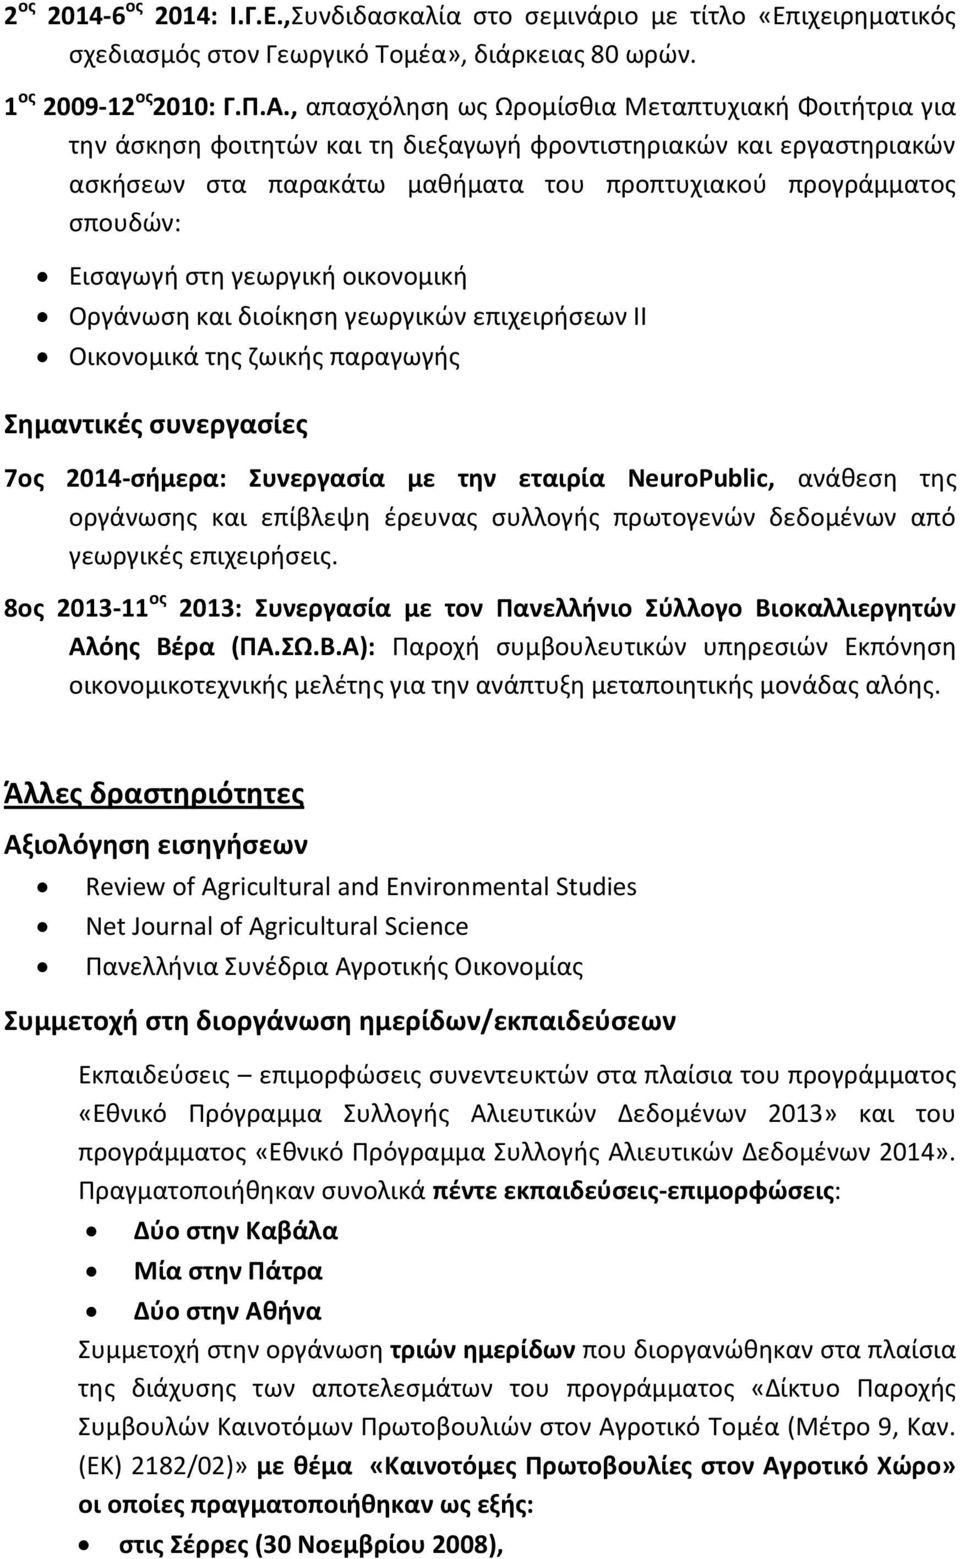 Ειςαγωγι ςτθ γεωργικι οικονομικι Οργάνωςθ και διοίκθςθ γεωργικϊν επιχειριςεων ΙΙ Οικονομικά τθσ ηωικισ παραγωγισ θμαντικζσ ςυνεργαςίεσ 7οσ 2014-ςιμερα: υνεργαςία με τθν εταιρία NeuroPublic, ανάκεςθ